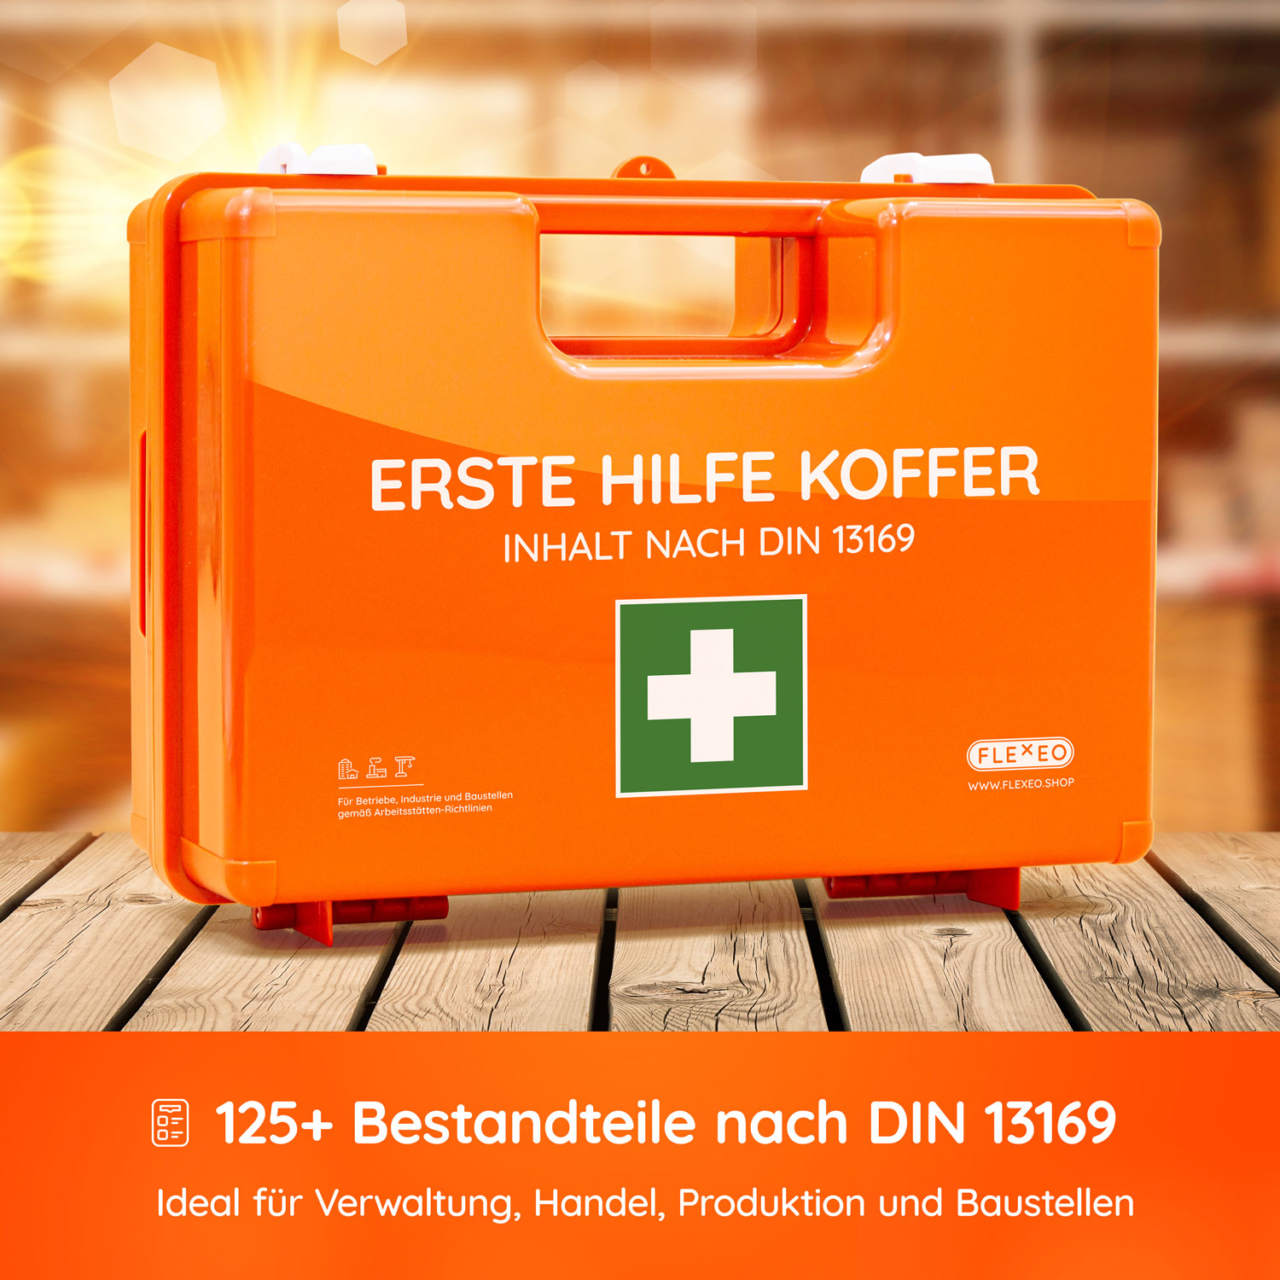 Erste-Hilfe-Sanitätskoffer, mittel nach DIN 13169 für mittle